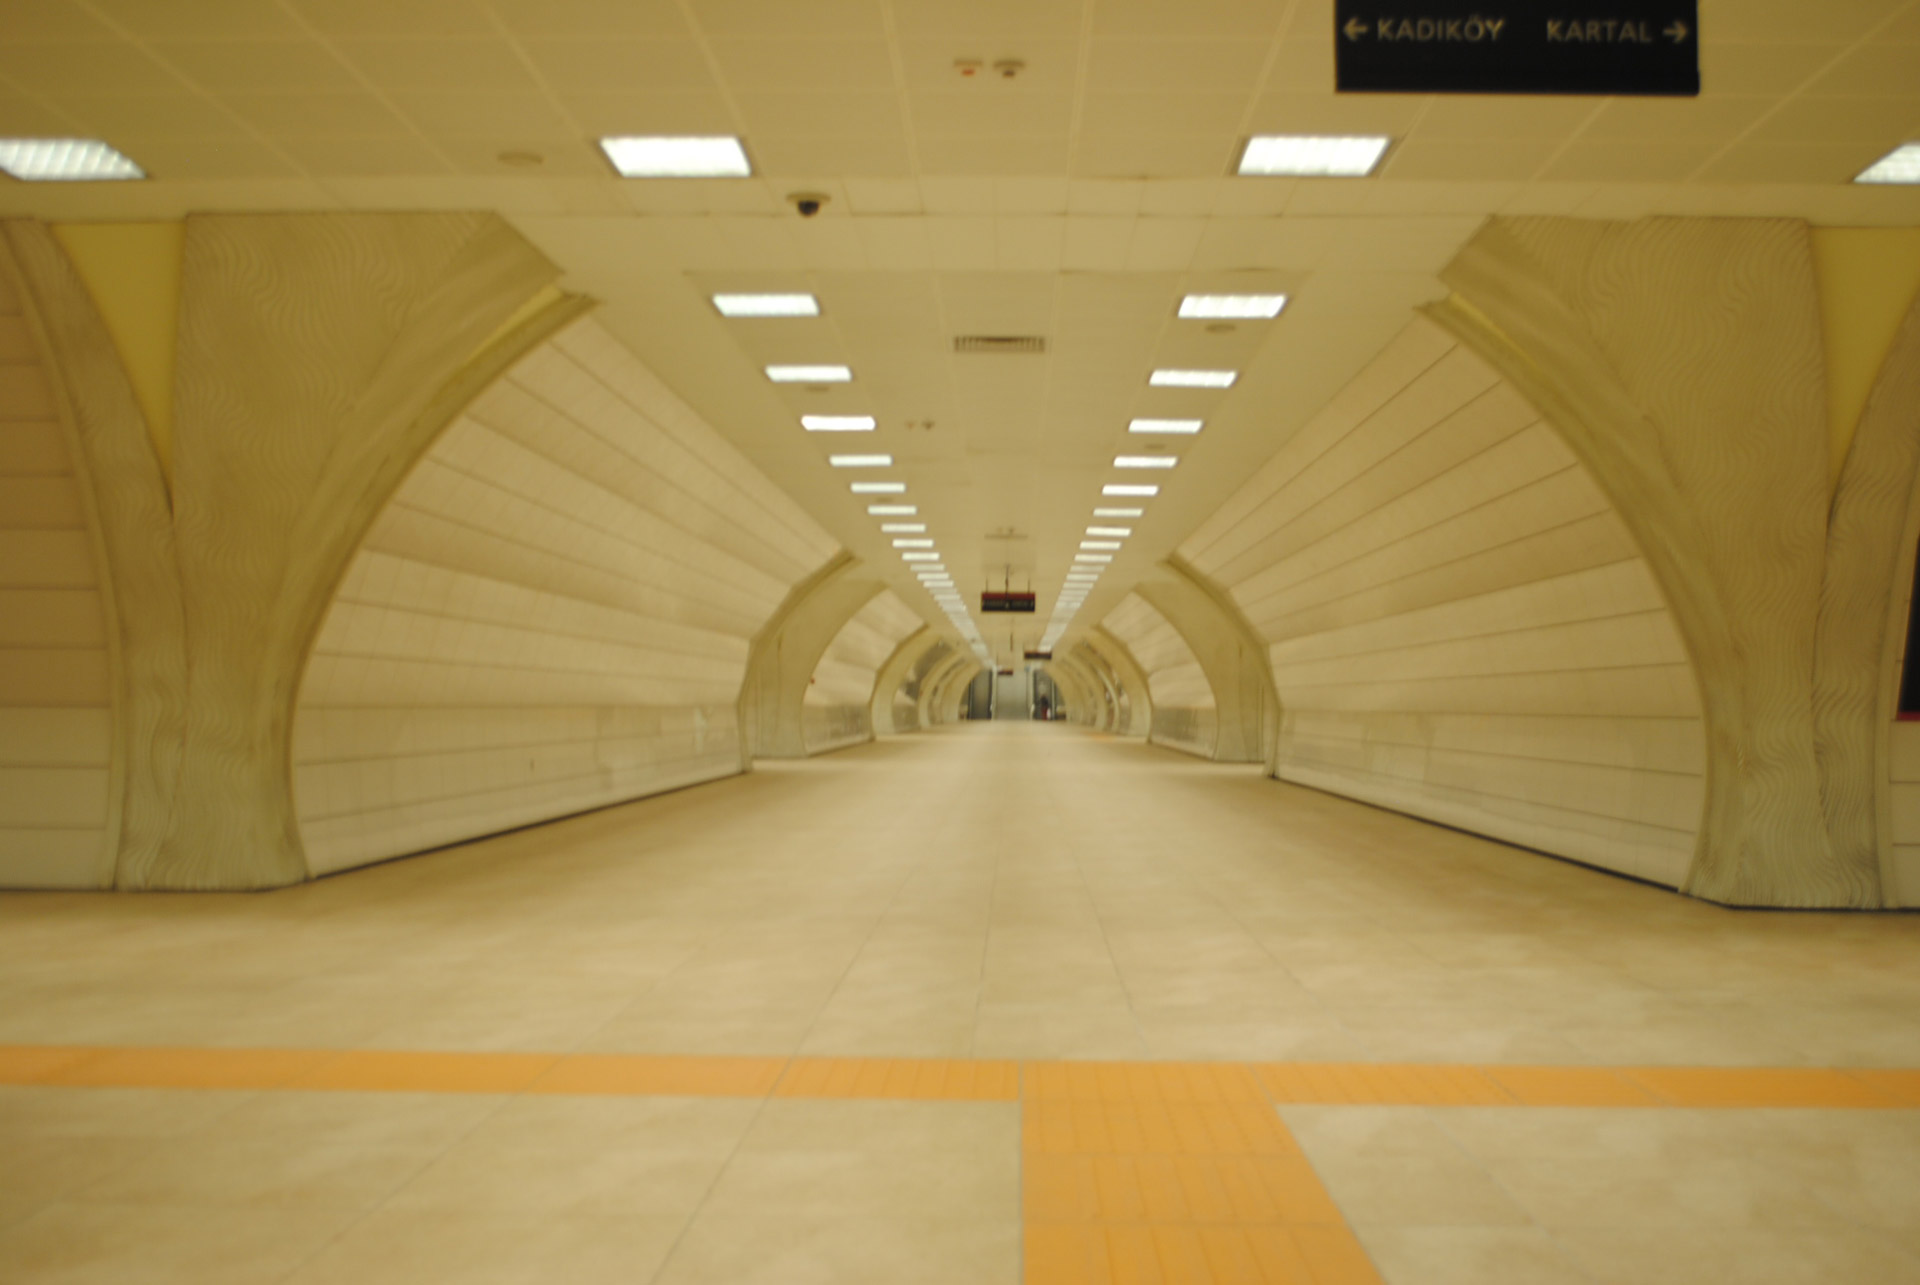 Underground Subway Station Hallway Free Stock Photo Public Domain